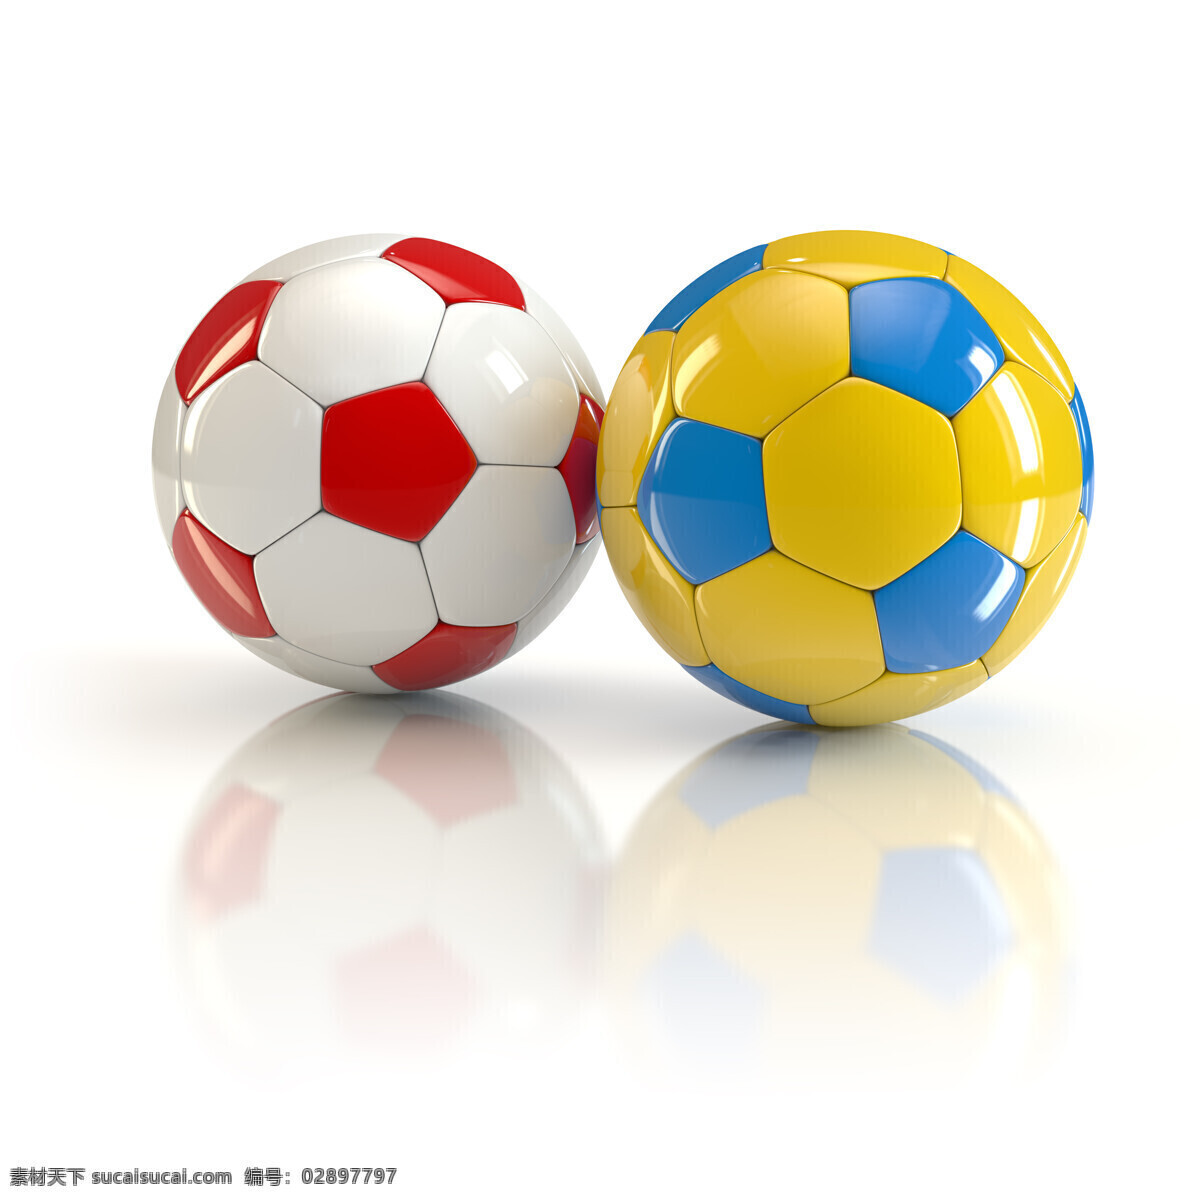 足球图片素材 彩色 足球 红色 蓝色 白色 其他模板 体育运动 生活百科